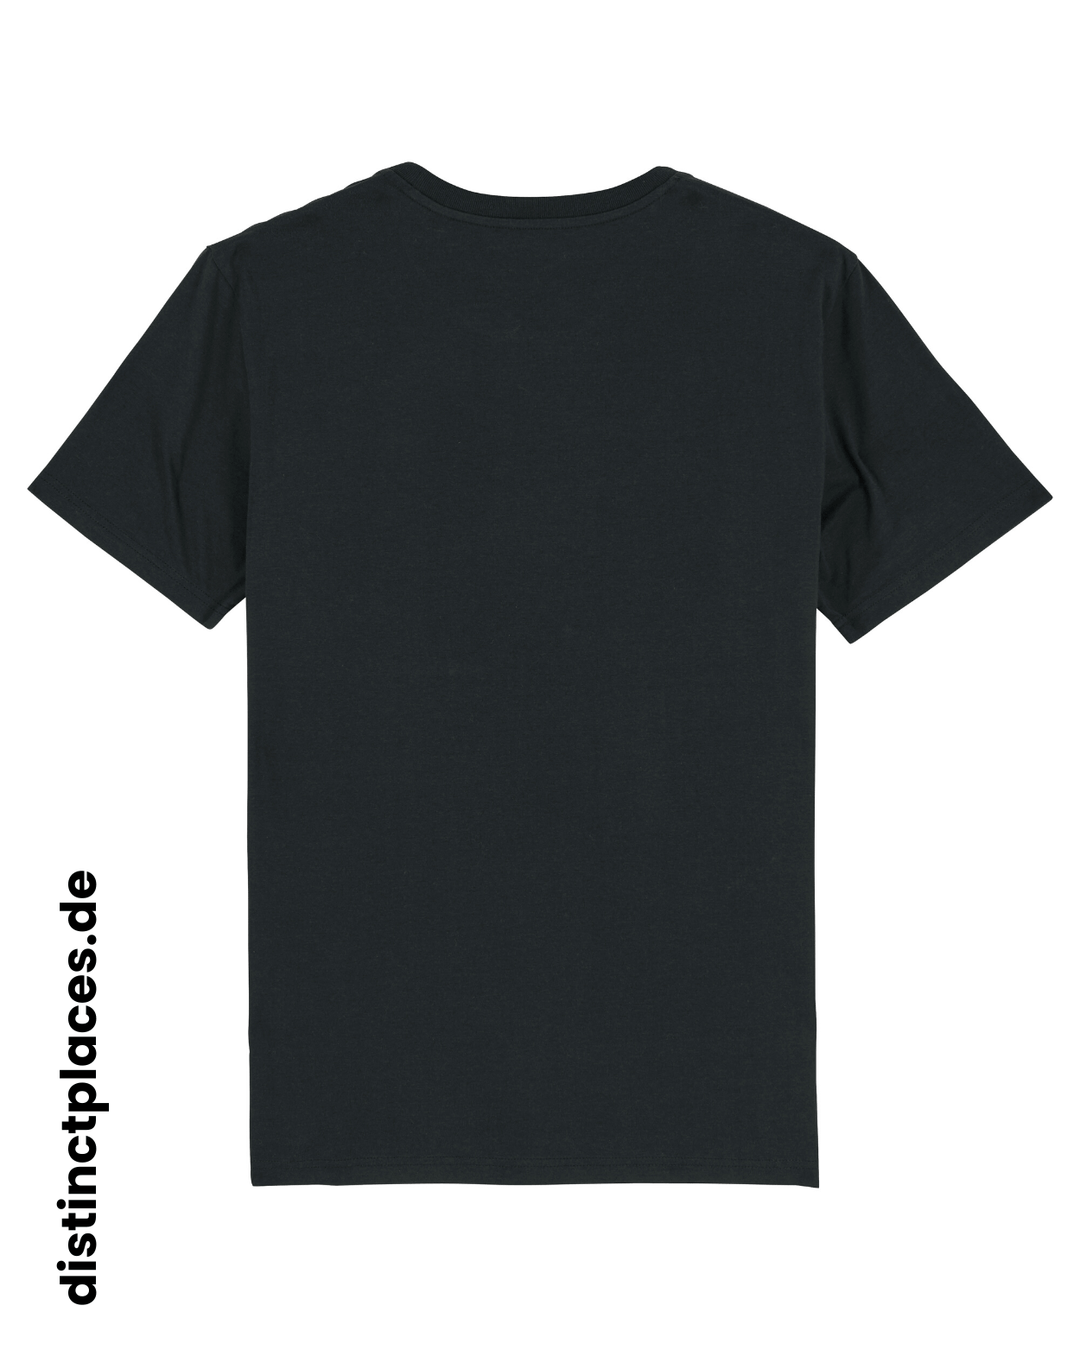 Schwarzes fairtrade, vegan und bio-baumwoll T-Shirt von hinten mit einem minimalistischem weißen Logo, beziehungsweise Schriftzug für Sachsen